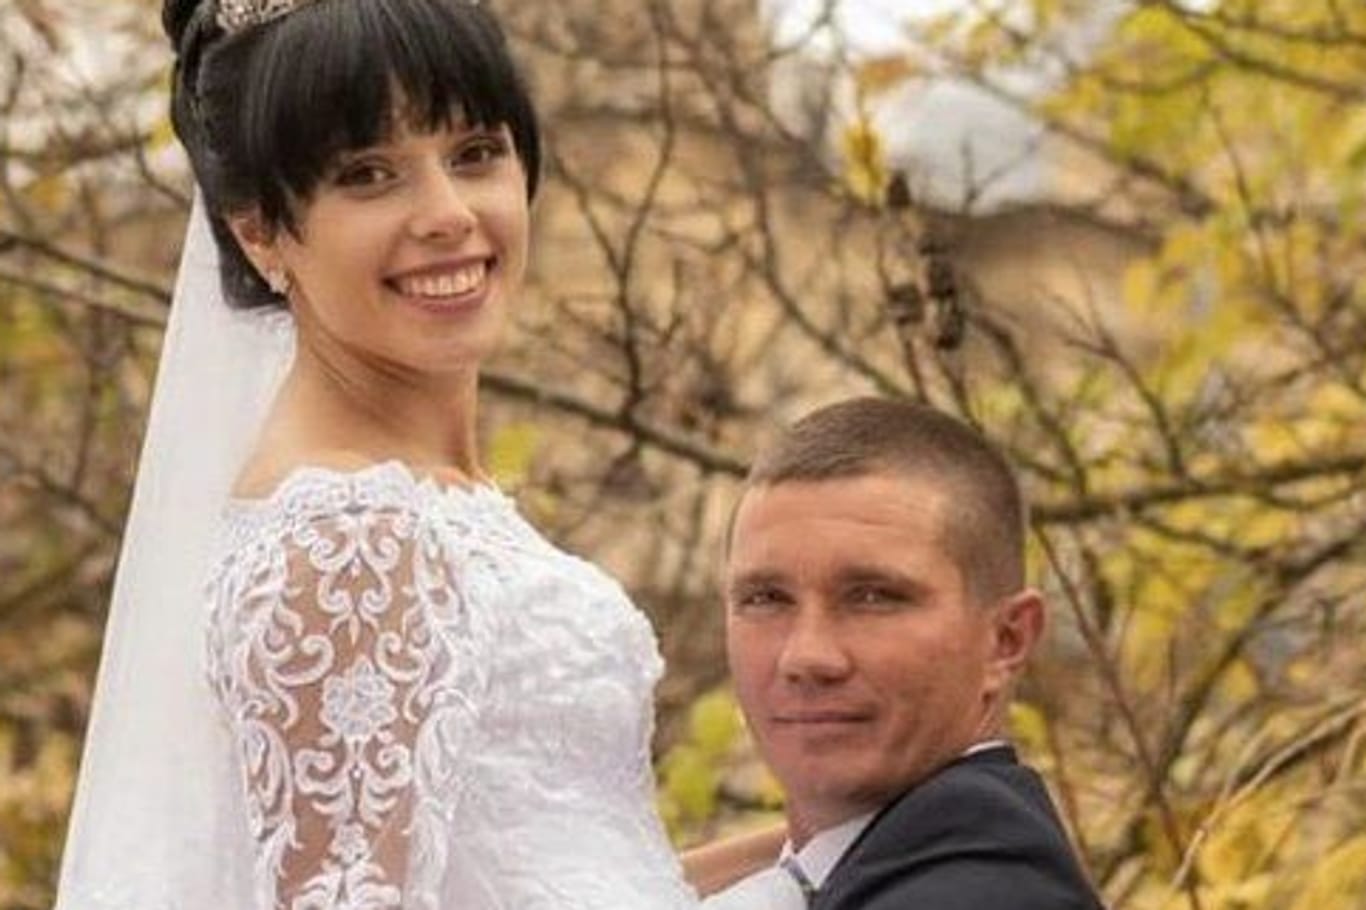 Anastasia und Walerij Saksaganski am Tag ihrer Hochzeit: Wer sich jetzt um die zweijährige Tochter kümmert, ist unklar.